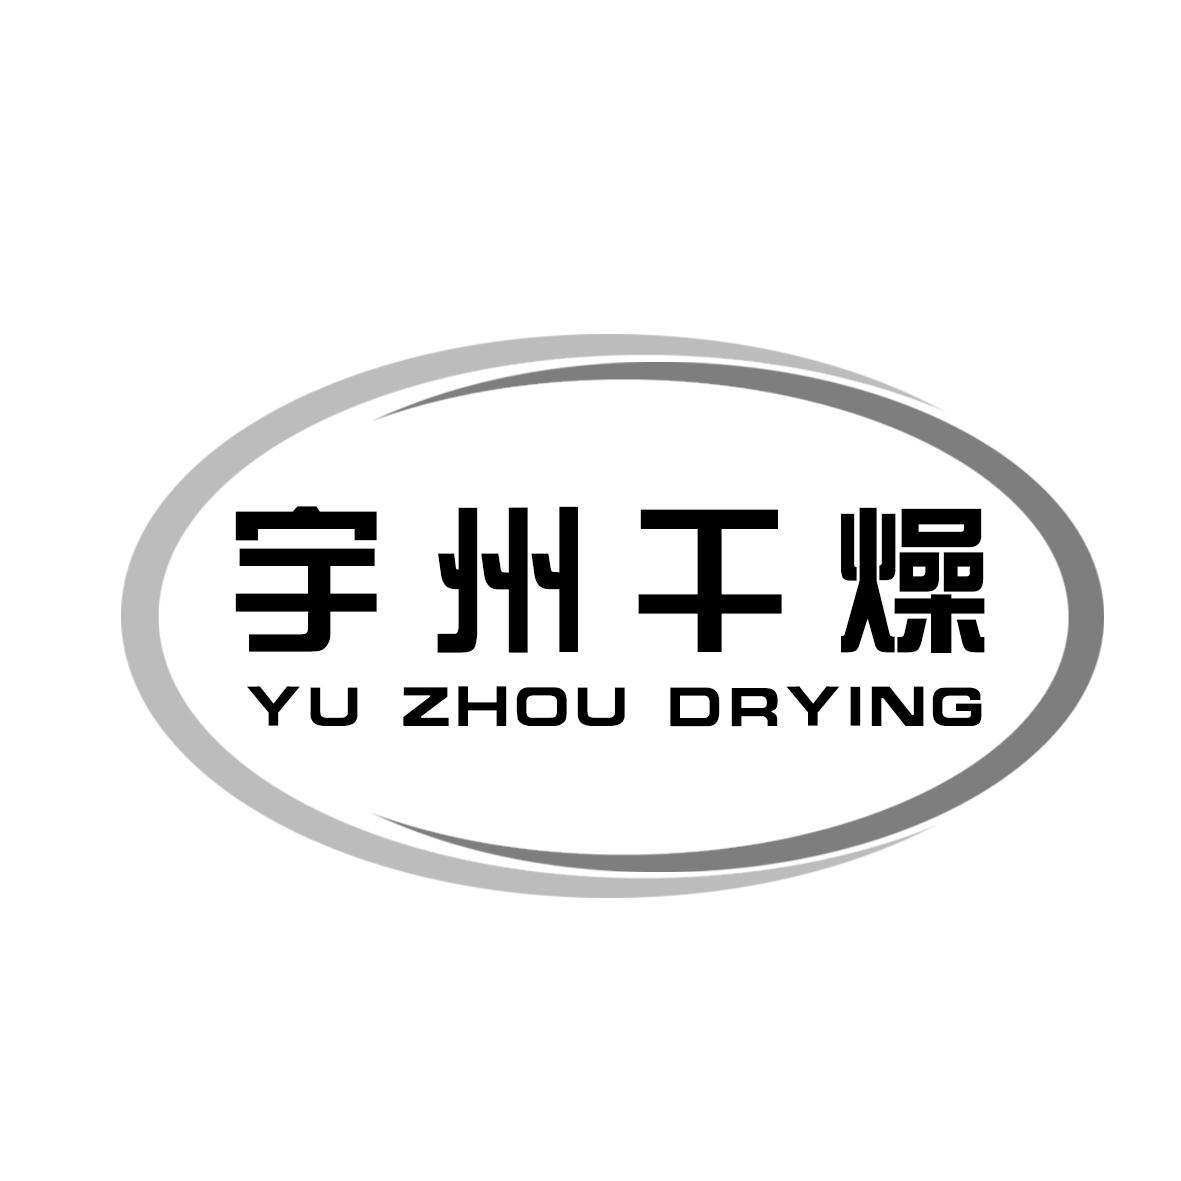 宇州干燥 YU ZHOU DRYING